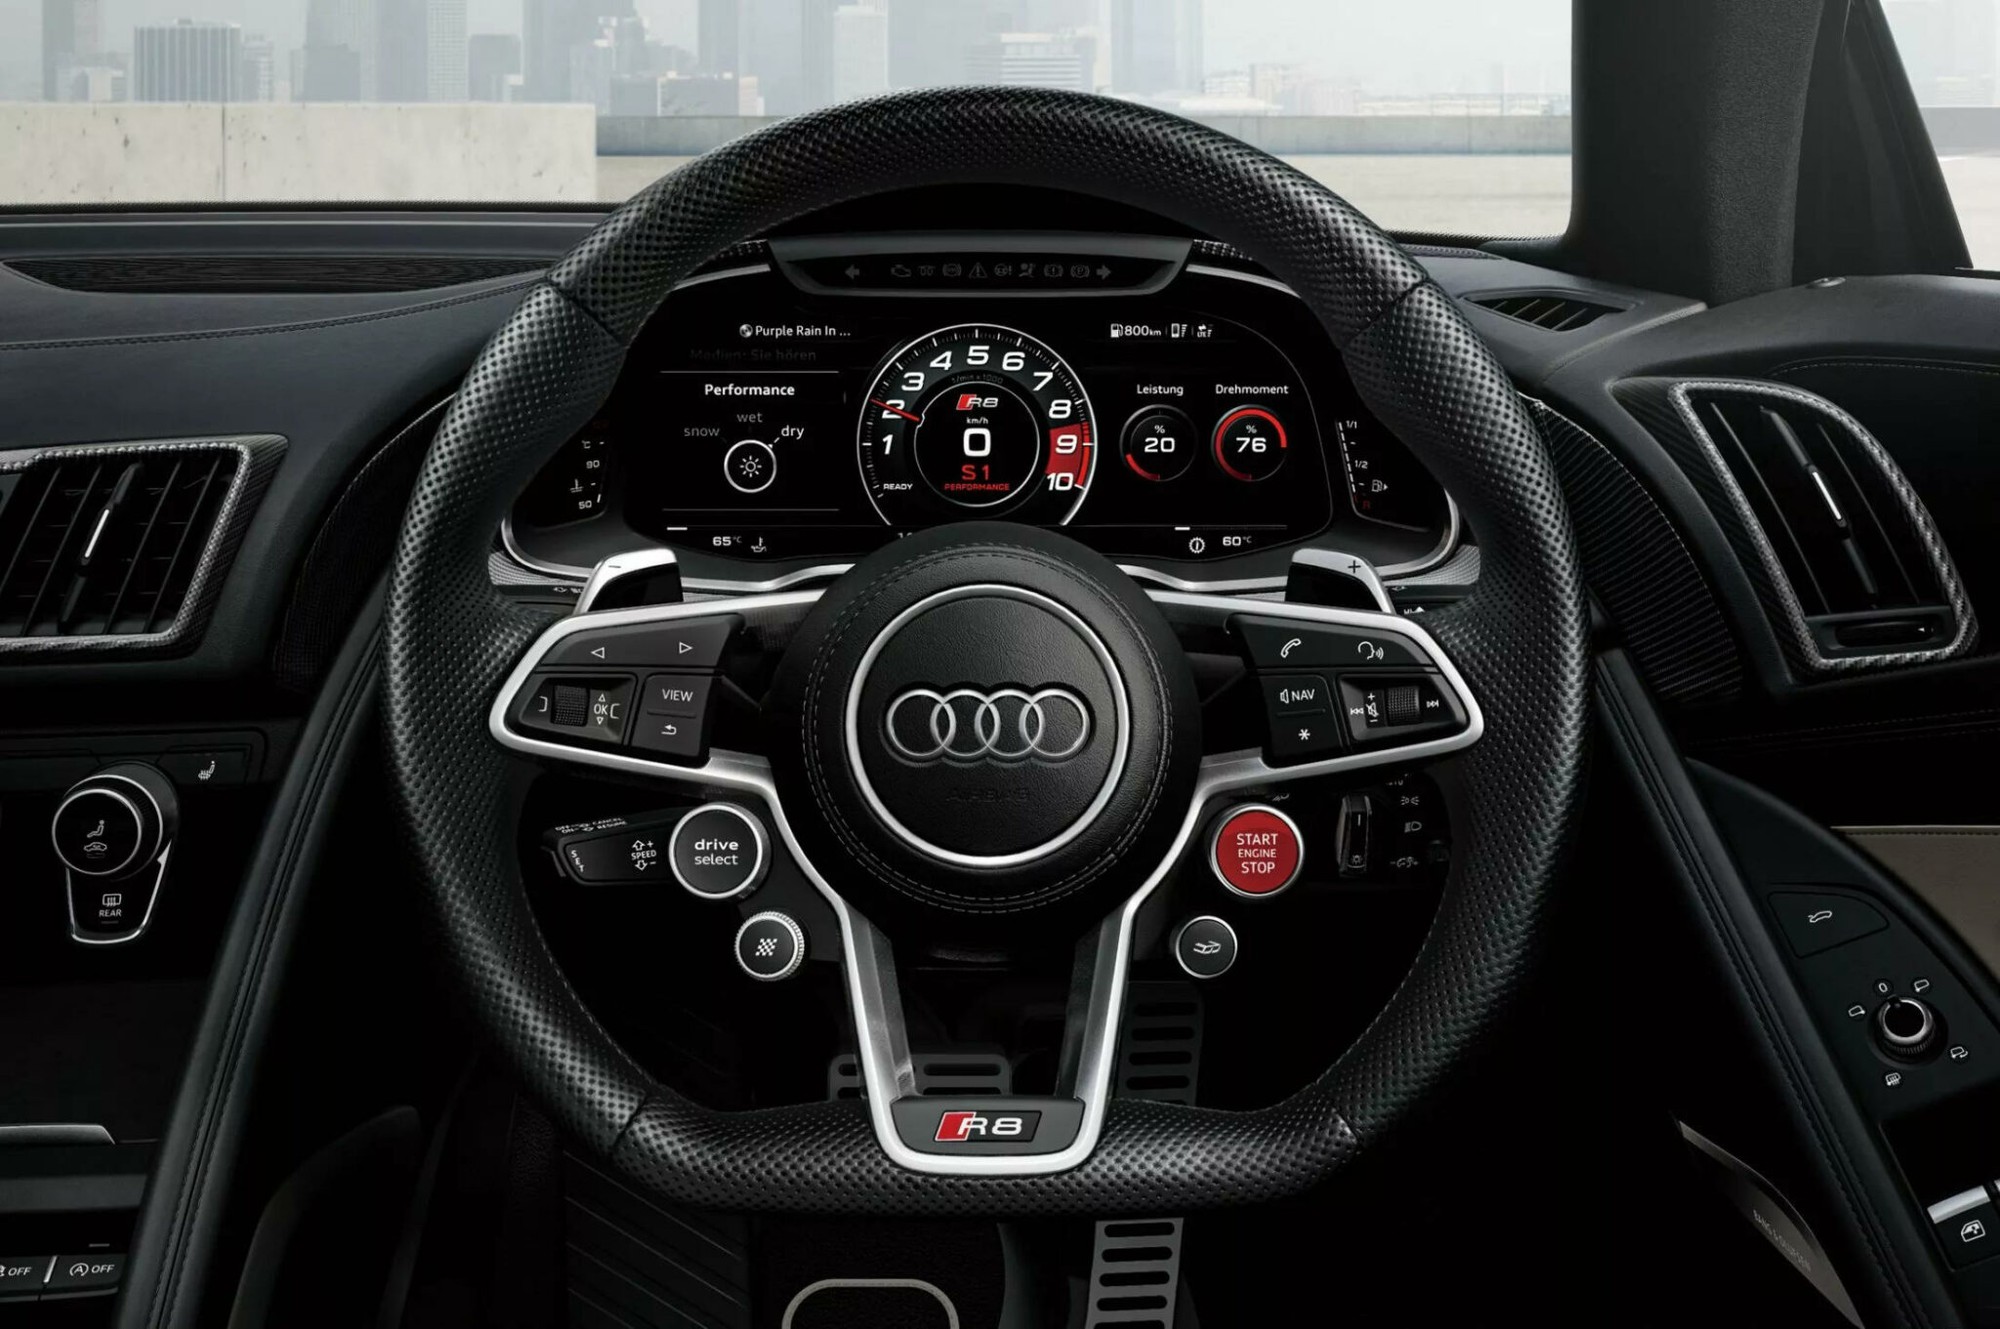 Khám phá phiên bản giới hạn đặc biệt của Audi R8 - Ảnh 4.